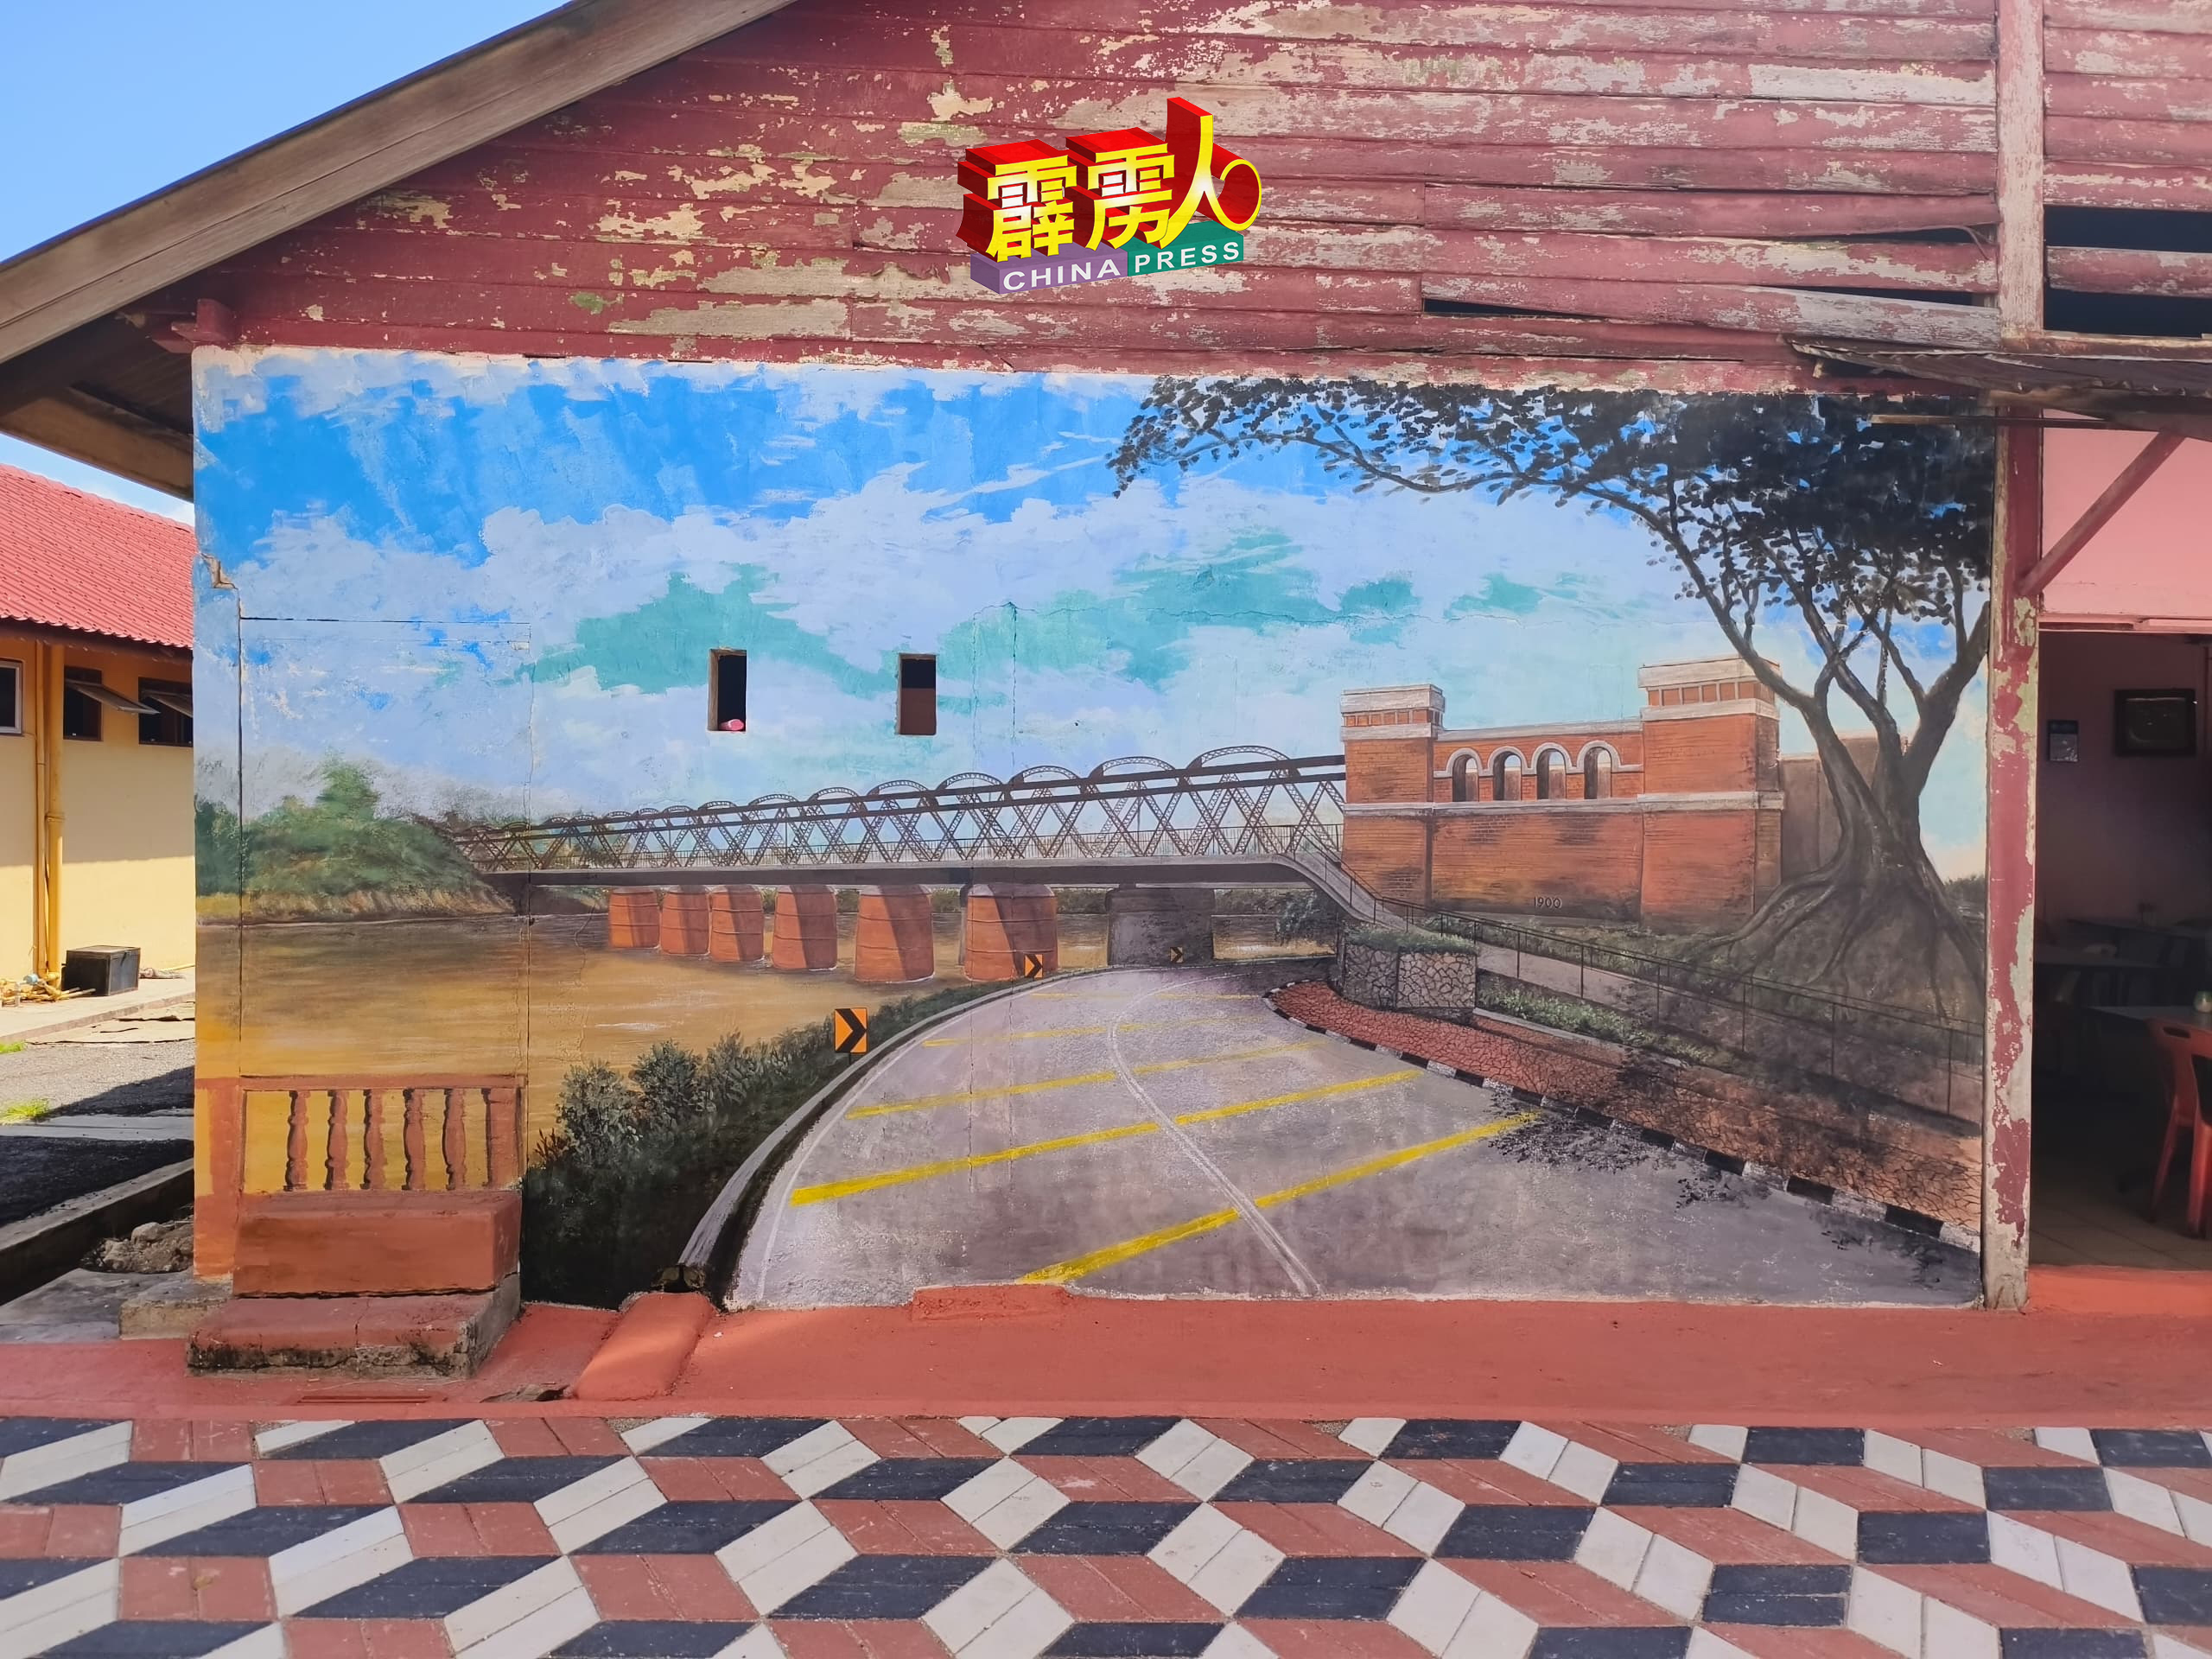 维多利亚百年火车桥已经是江沙家喻户晓的打卡热点，壁画怎能少了这个具有代表性的建筑呢！